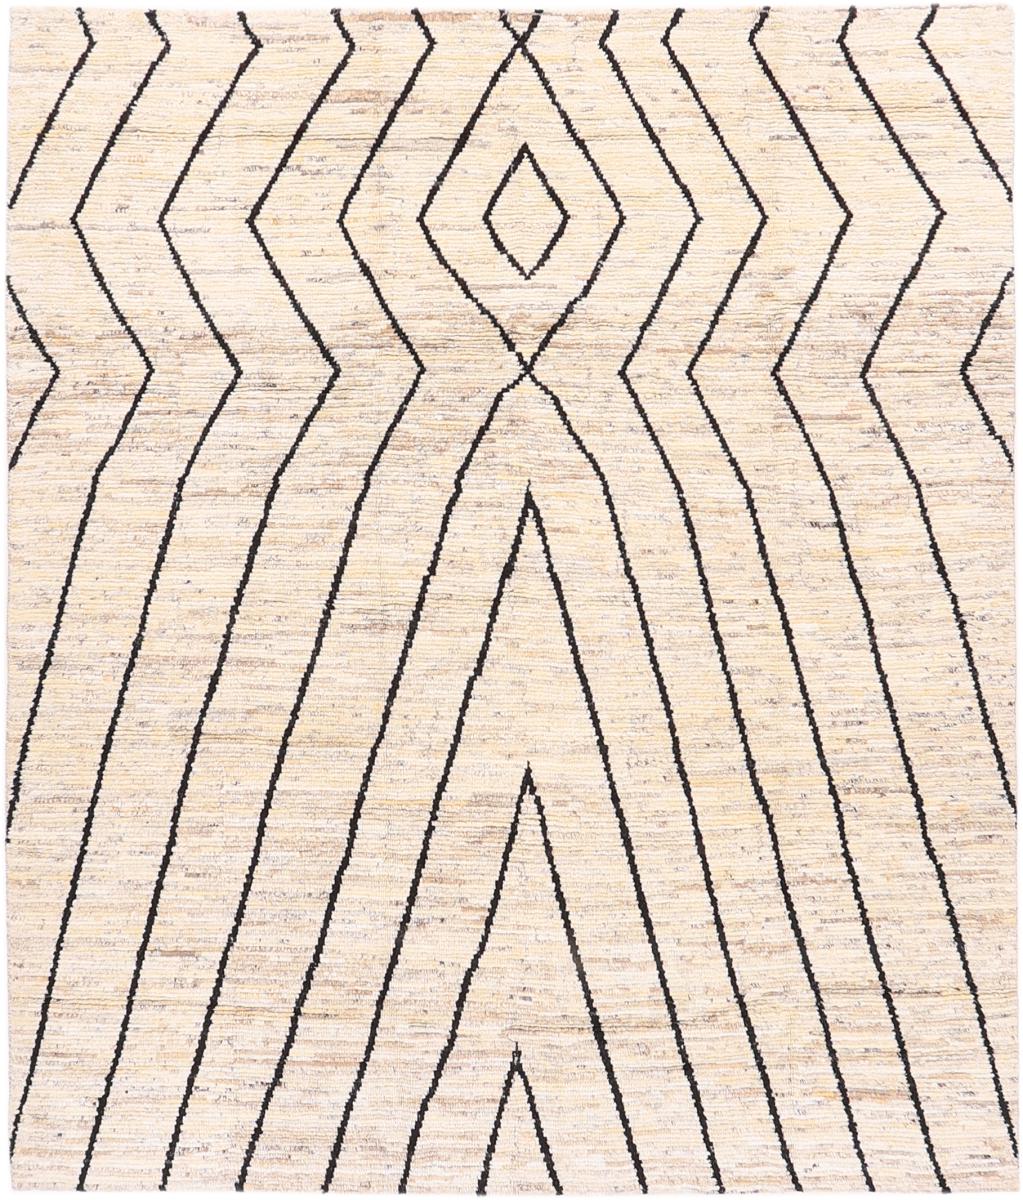 Afghaans tapijt Berbers Maroccan Atlas 9'9"x8'3" 9'9"x8'3", Perzisch tapijt Handgeknoopte